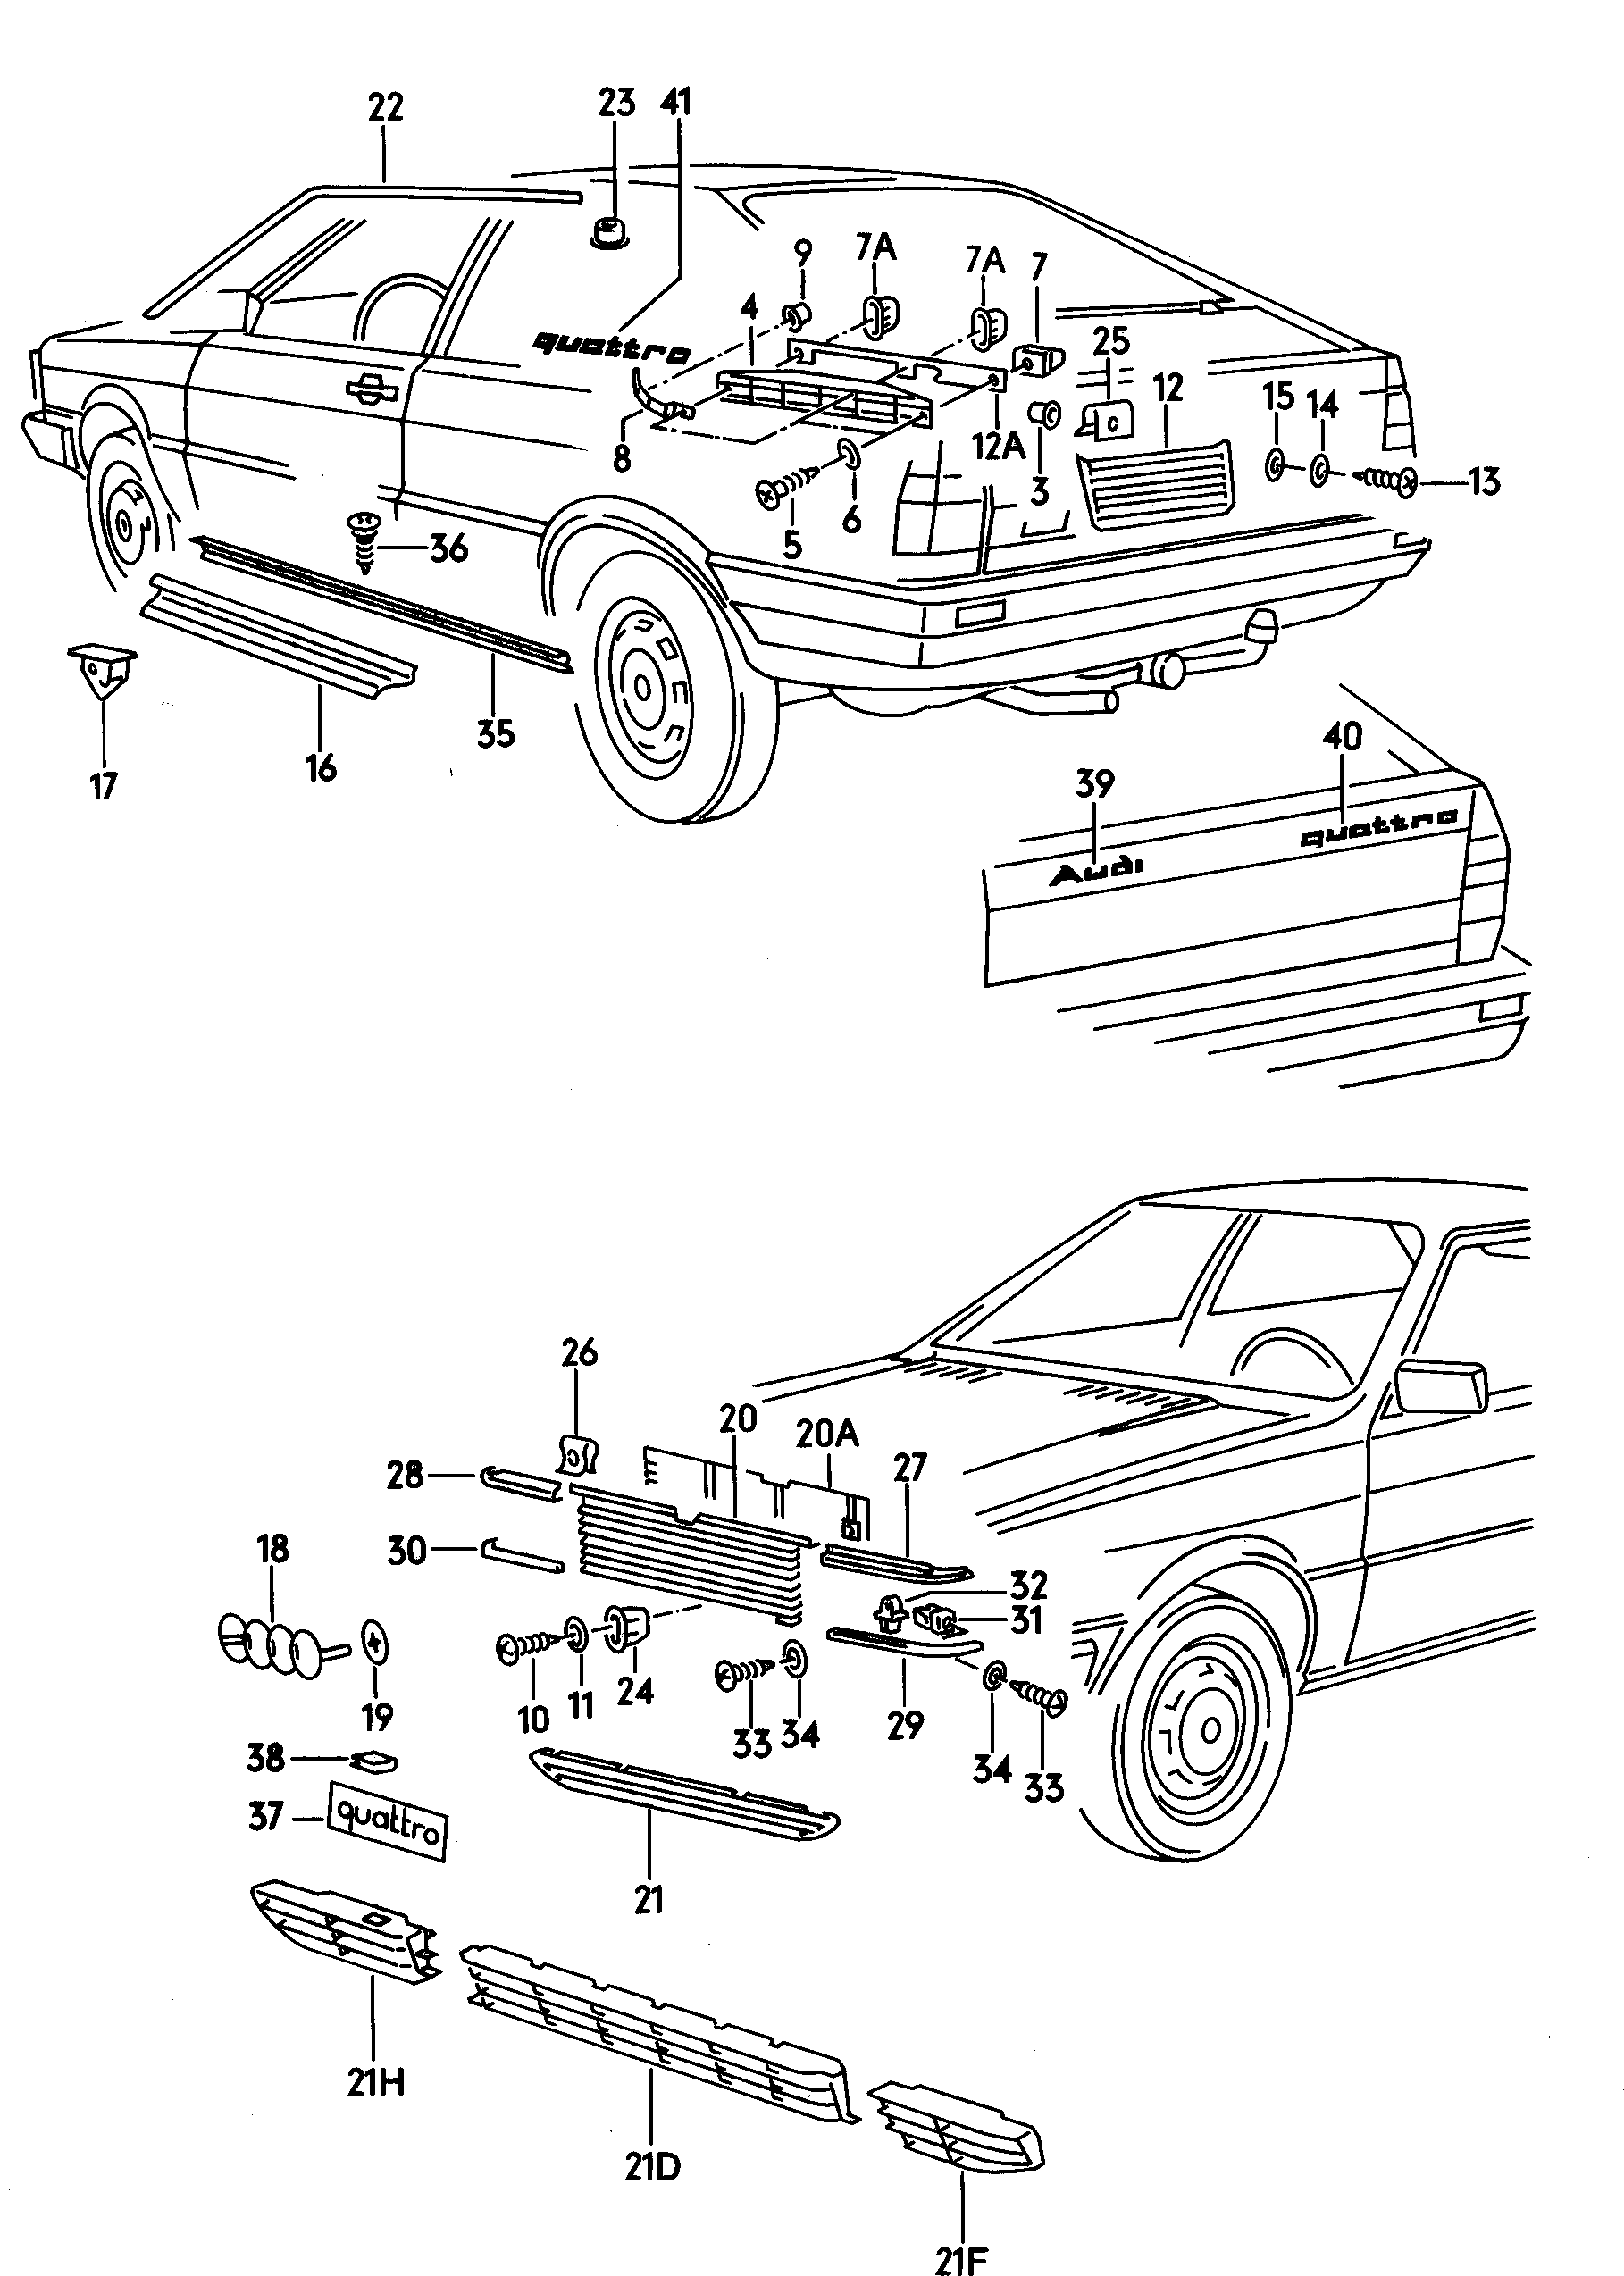 2188 3534 - Audi Coupe quattro - acoq